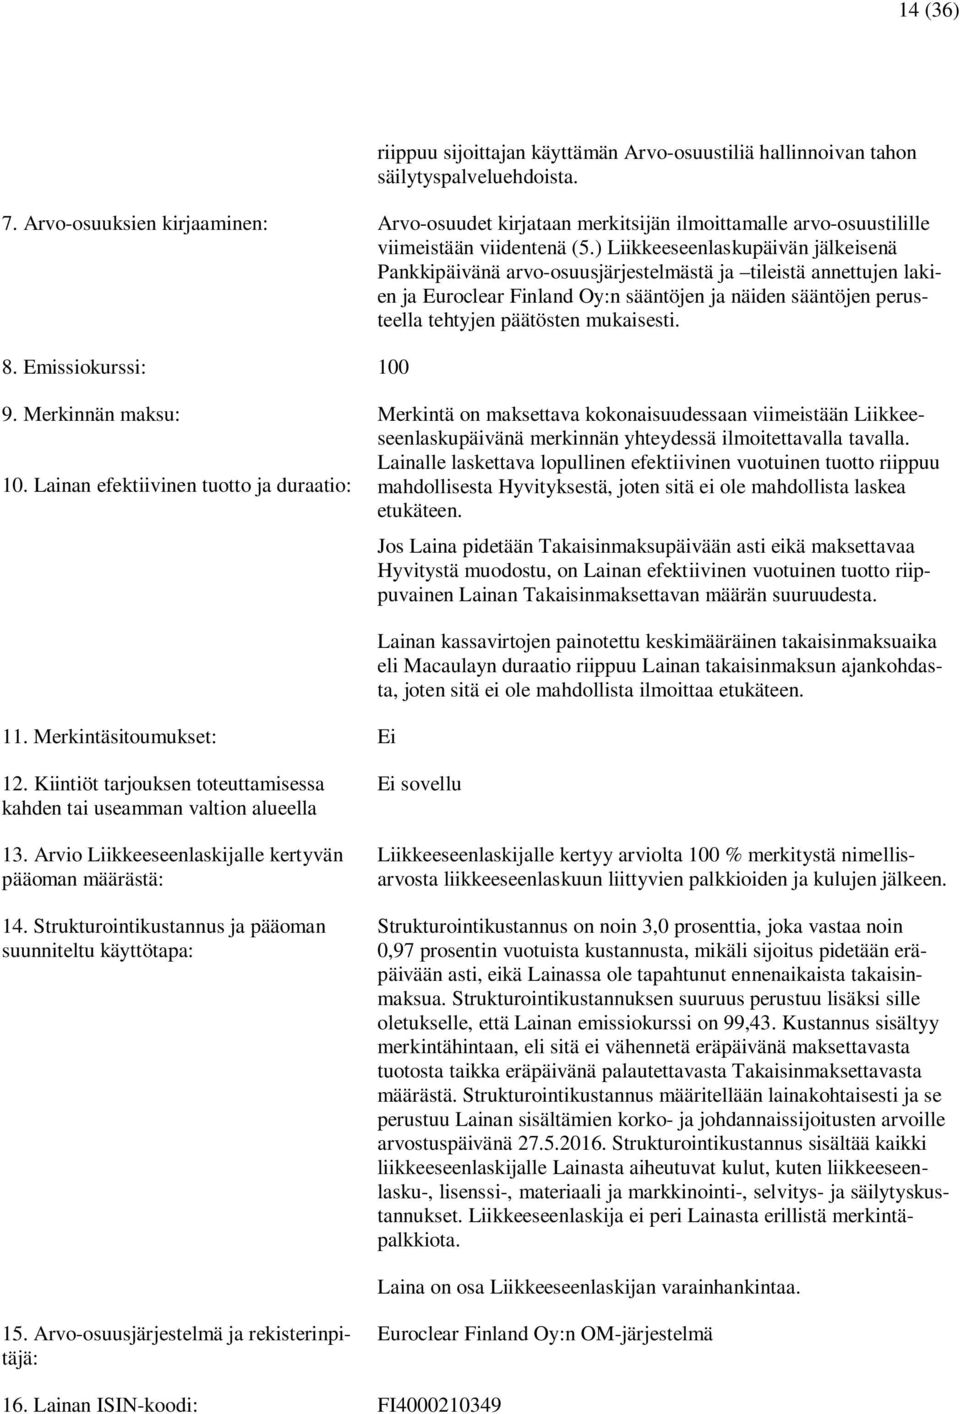 ) Liikkeeseenlaskupäivän jälkeisenä Pankkipäivänä arvo-osuusjärjestelmästä ja tileistä annettujen lakien ja Euroclear Finland Oy:n sääntöjen ja näiden sääntöjen perusteella tehtyjen päätösten